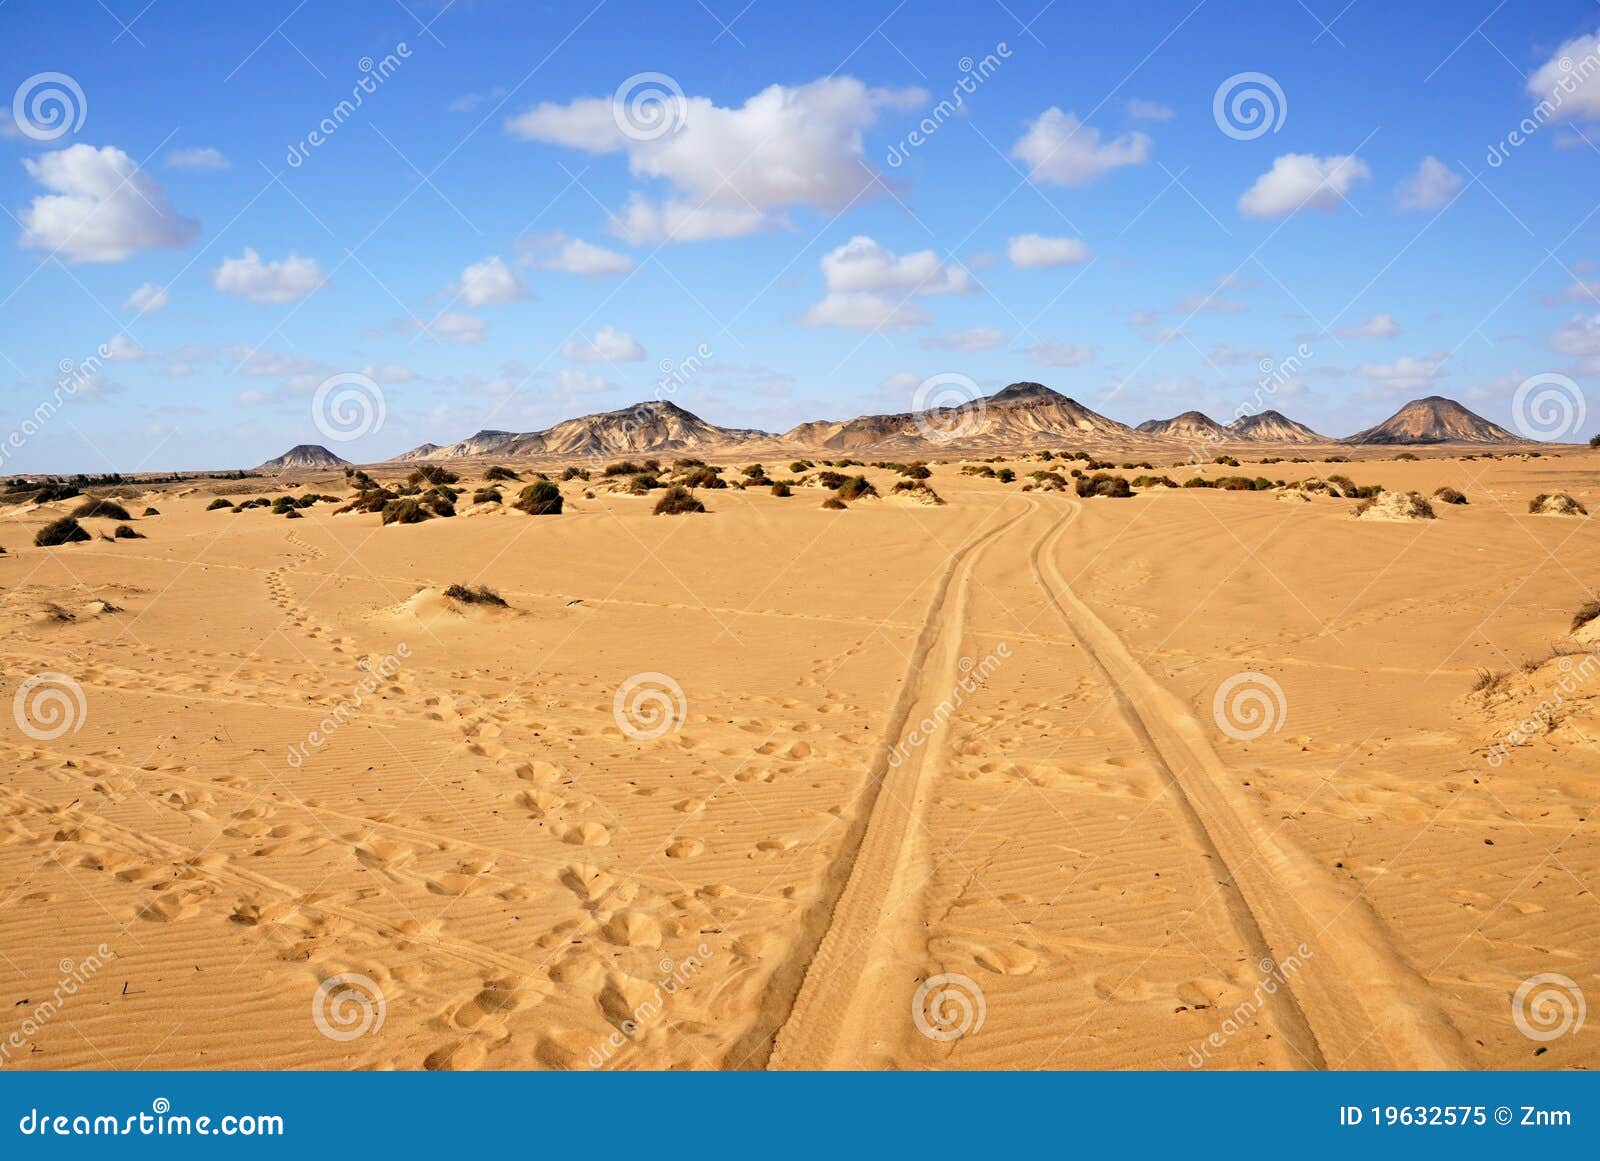 Sahara The Black Desert Egypt Stock Image Image Of